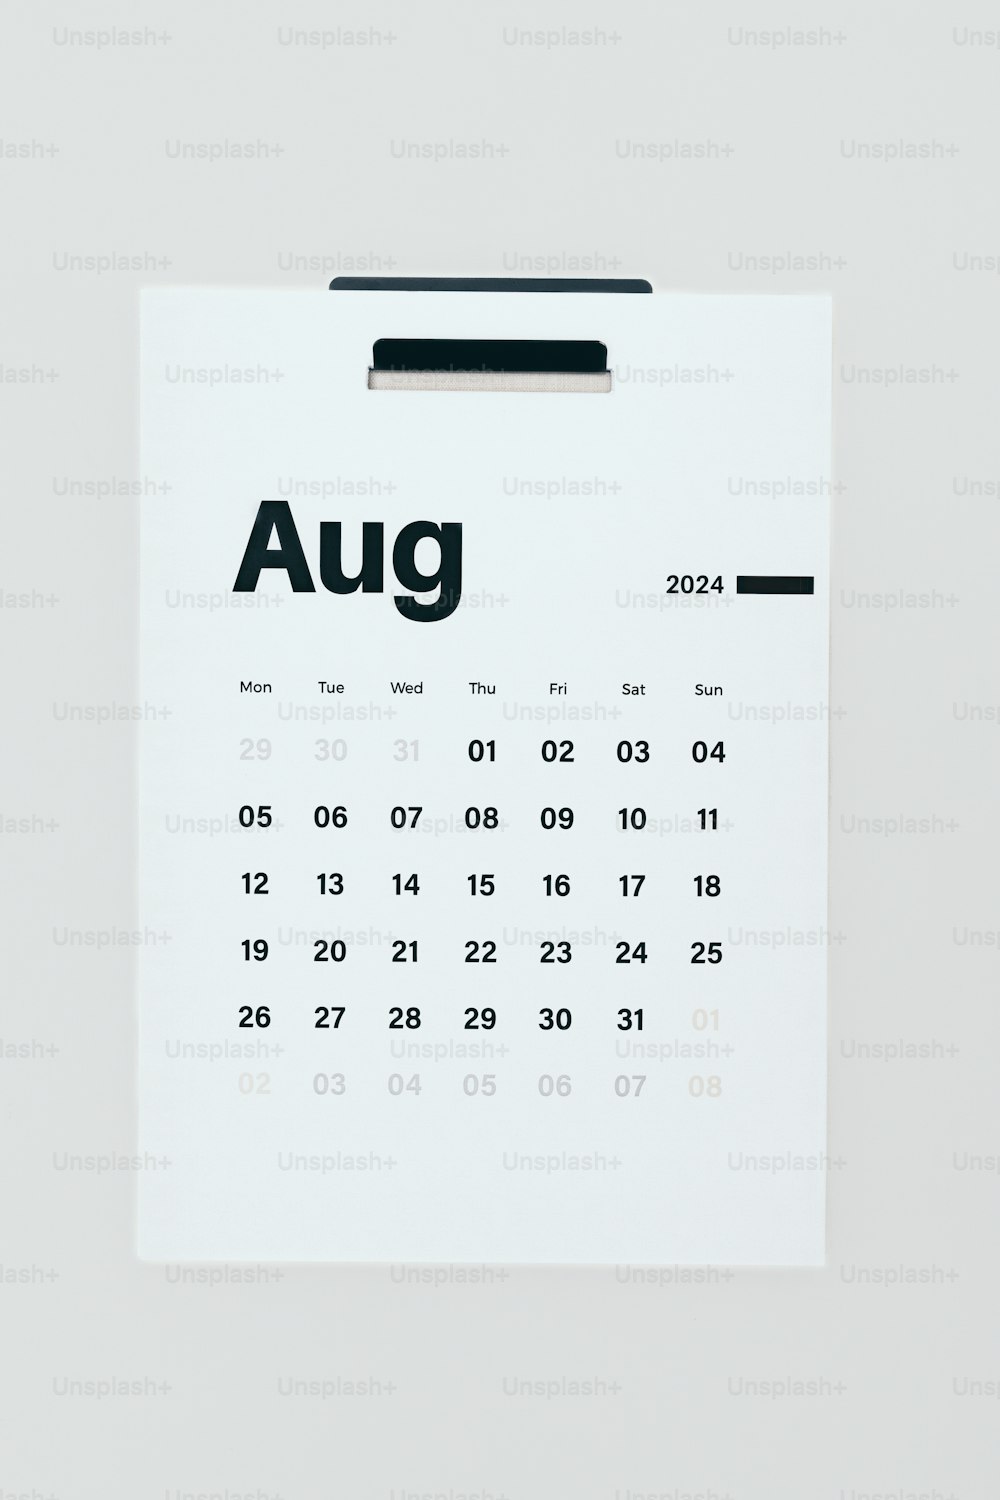 「8月」と書かれたカレンダー